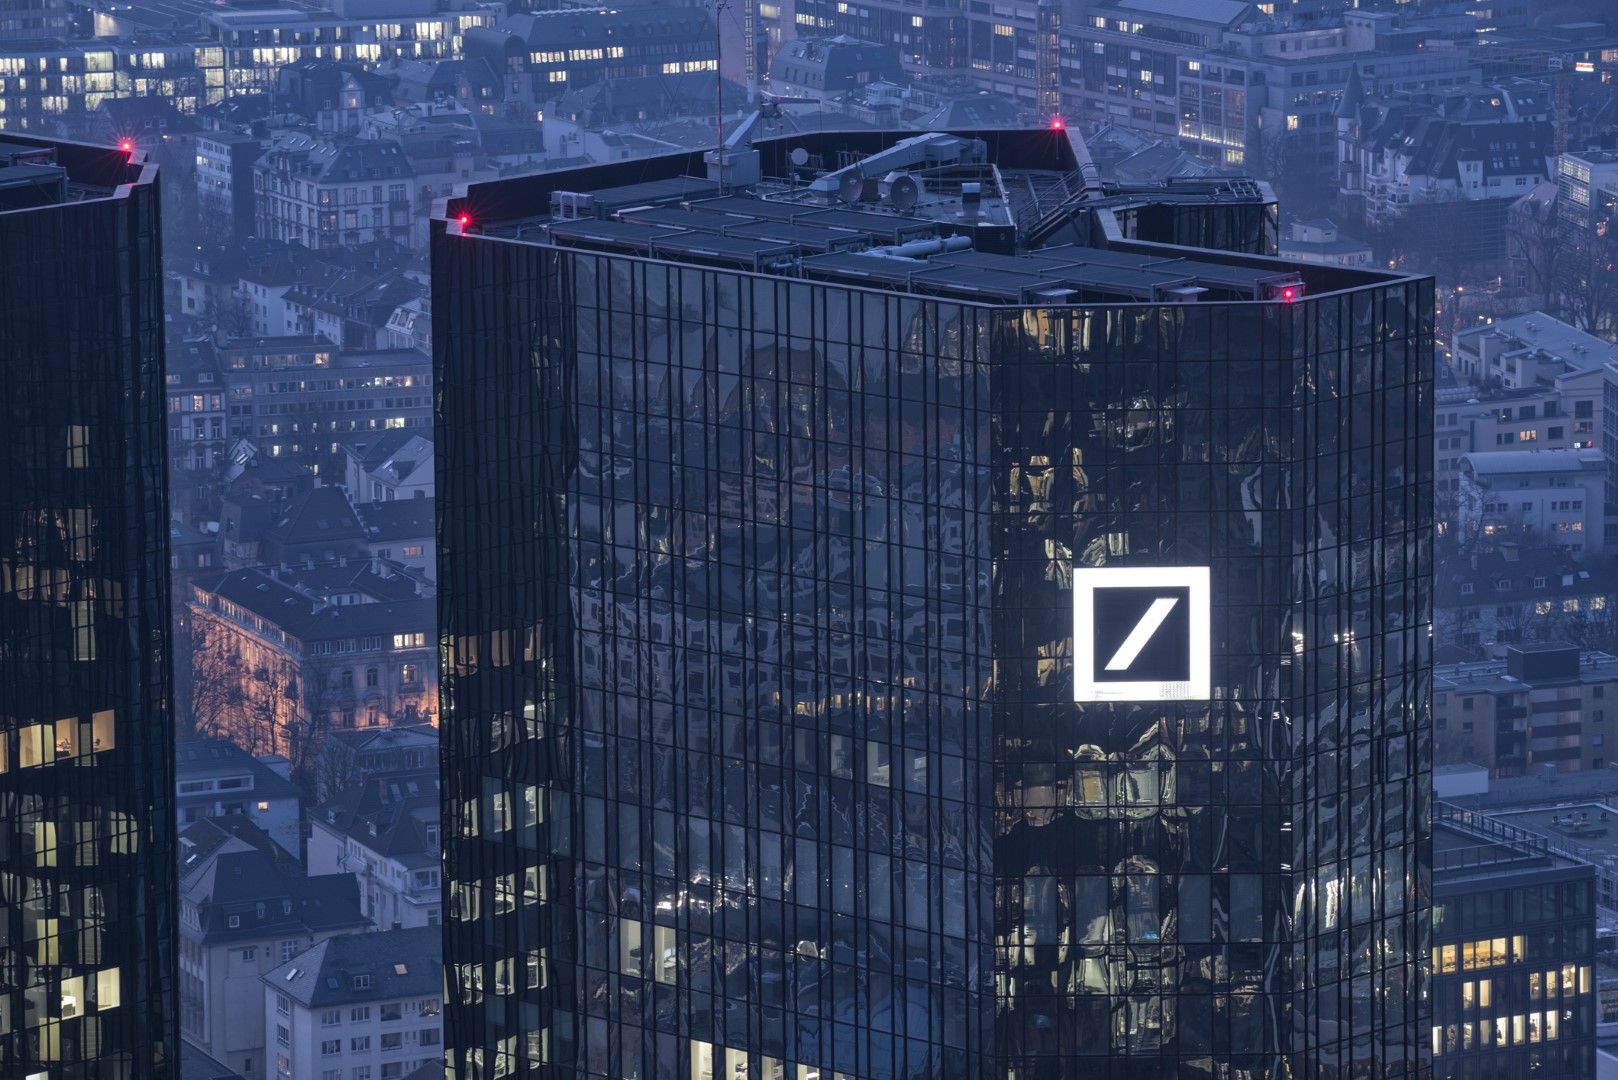 Преструктурирането на Deutsche bank, включително съкращаването на хиляди работни места, напредва добре, а икономическата среда се стабилизира. Това кара ръководството да е все по-оптимистично настроено